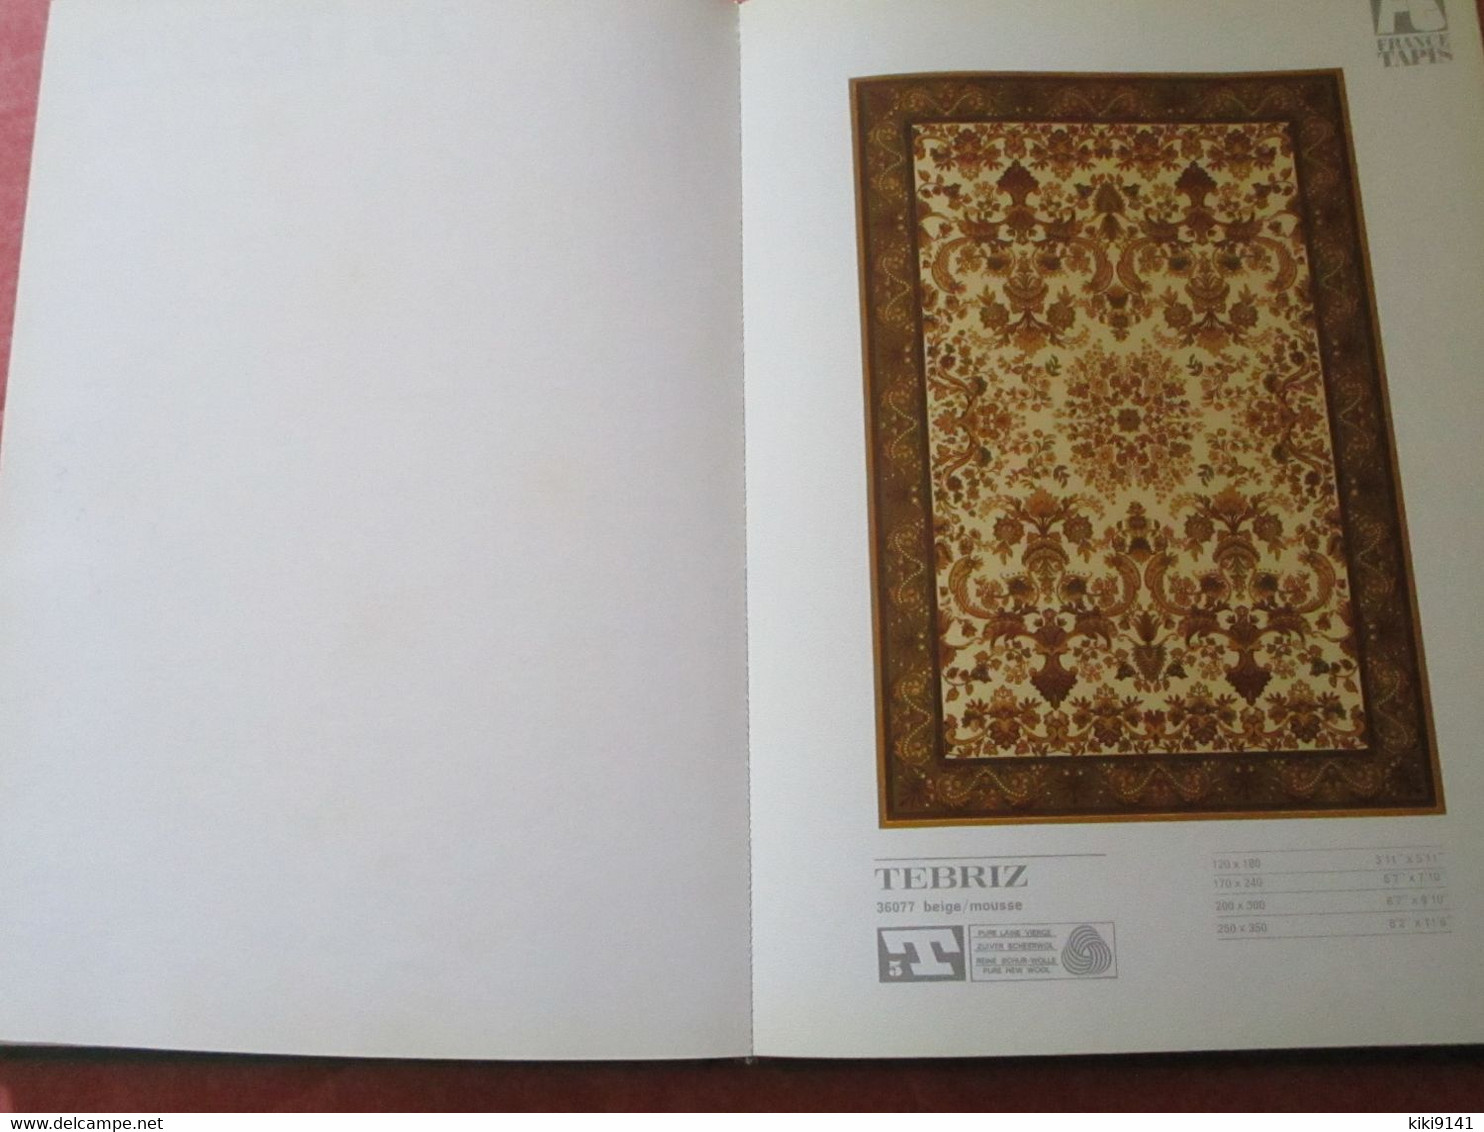 FRANCE TAPIS 74 -Catalogue collection Générale Carpettes - 328 pages dont 50% illustrées